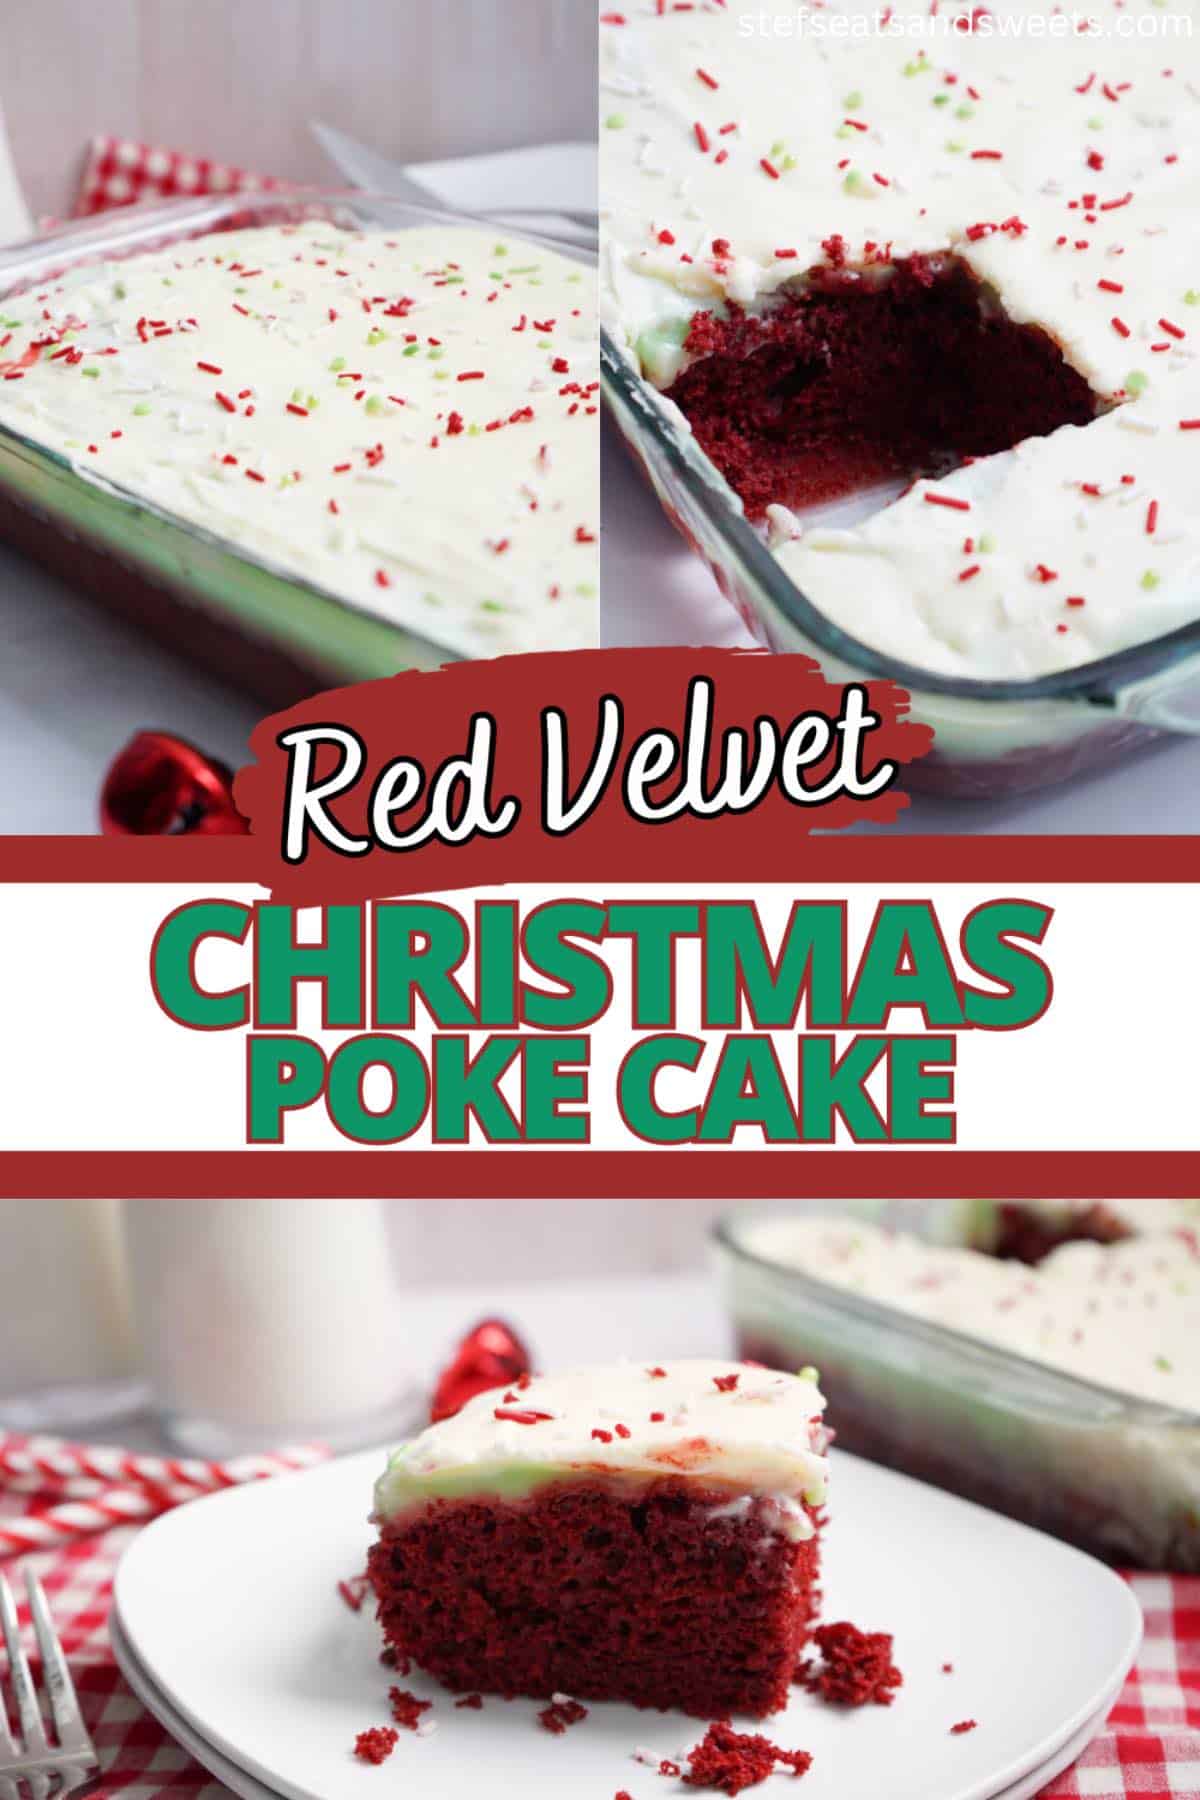 Red velvet Christmas cake Collage